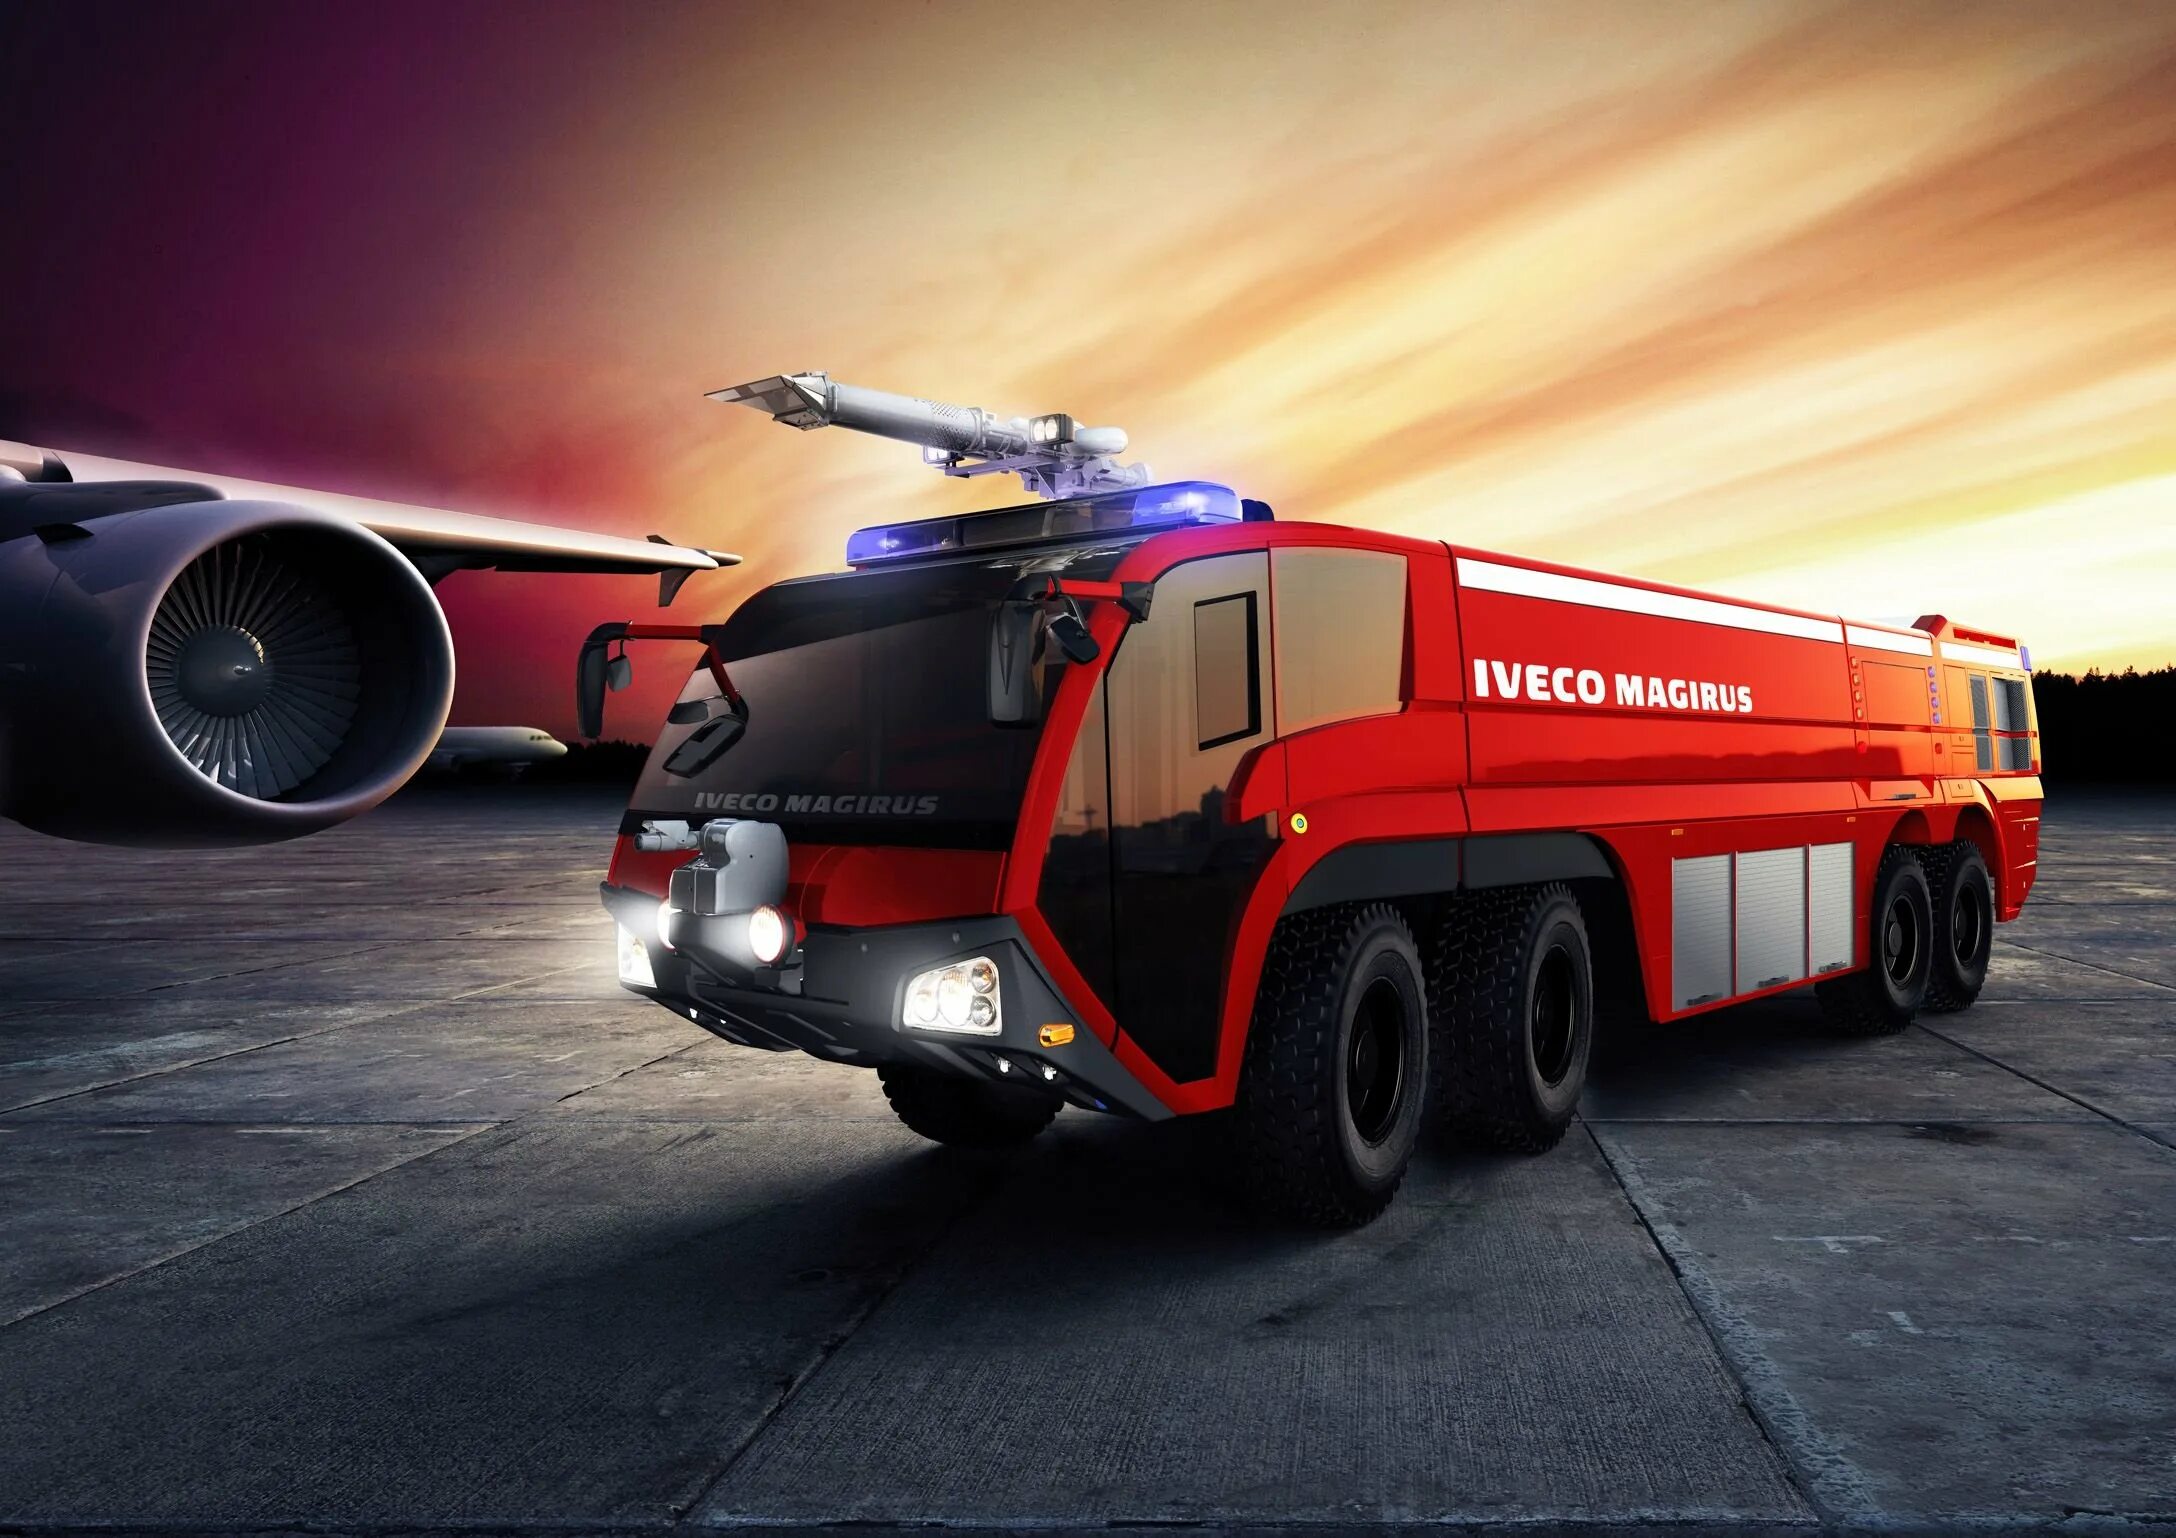 Пожарные автомобили специального назначения. Iveco Magirus. Magirus пожарная техника. Пожарный автомобиль Аэродромный Magirus. Аэродромный пожарный автомобиль Ивеко.